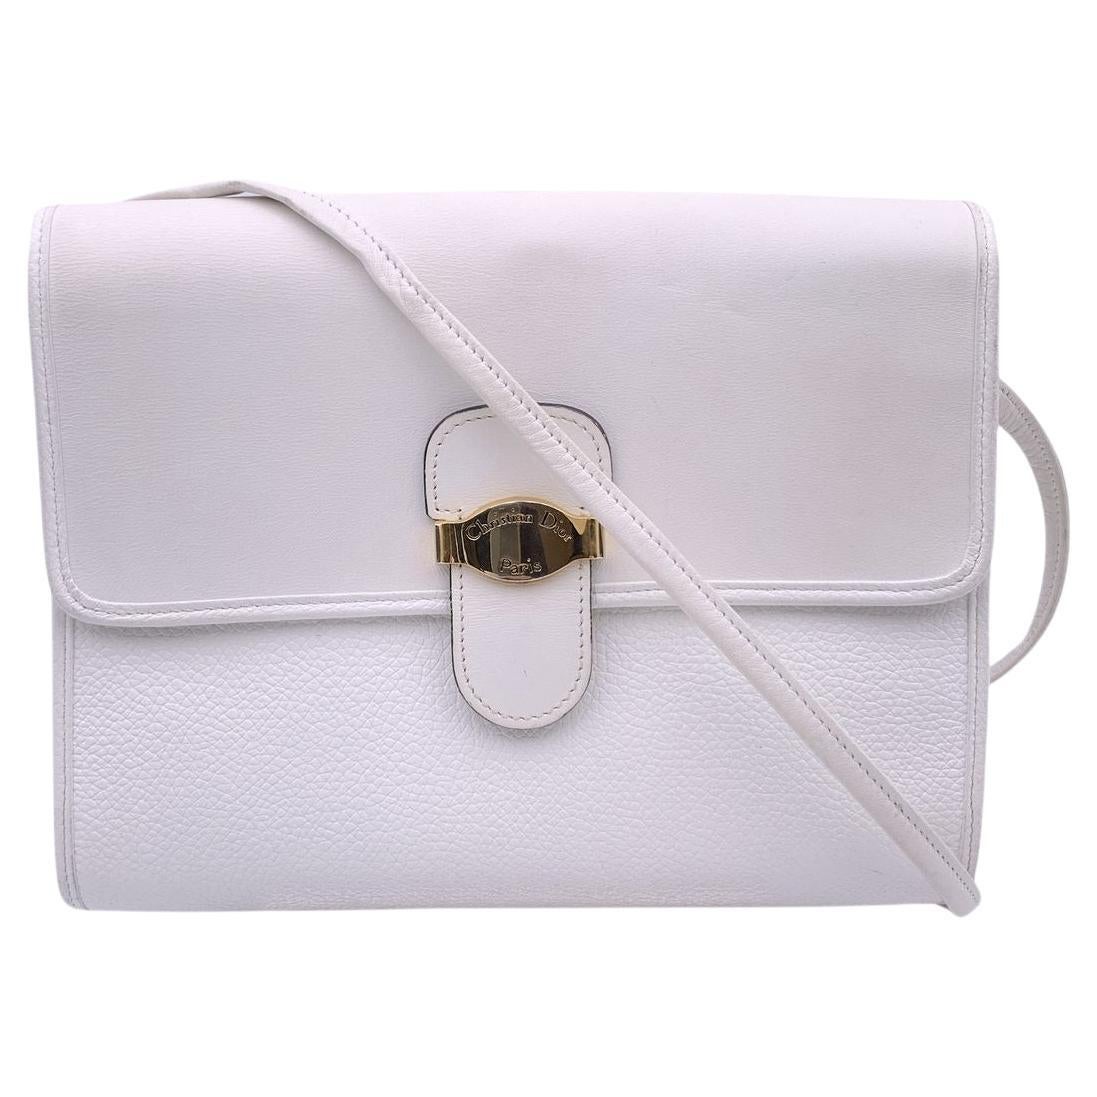 Christian Dior Vintage White Leather Crossbody Shoulder Bag